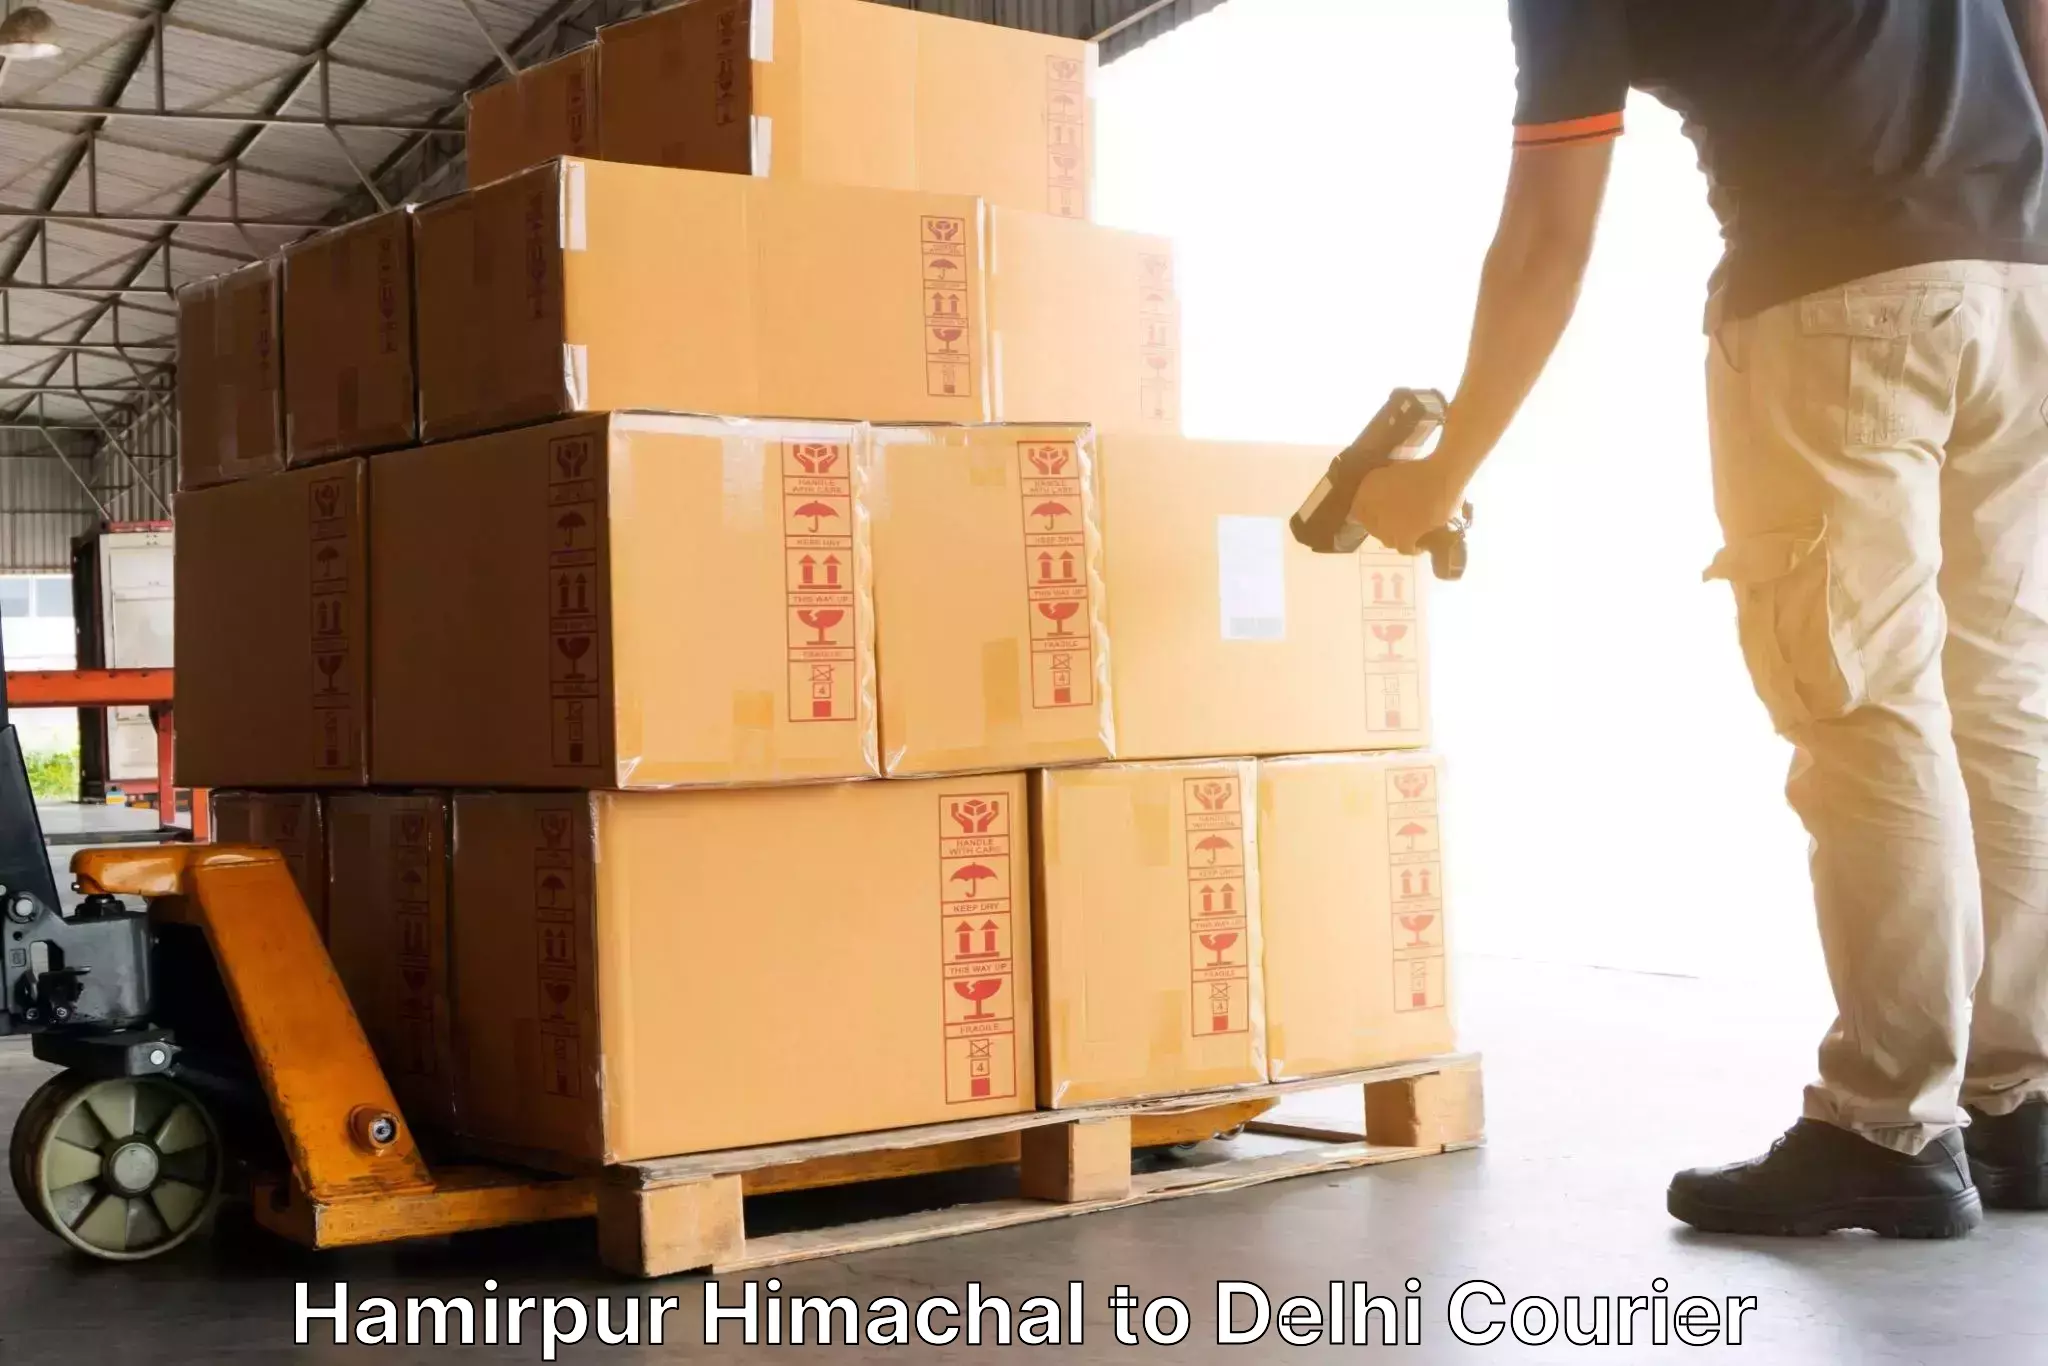 Flexible delivery schedules Hamirpur Himachal to Kalkaji